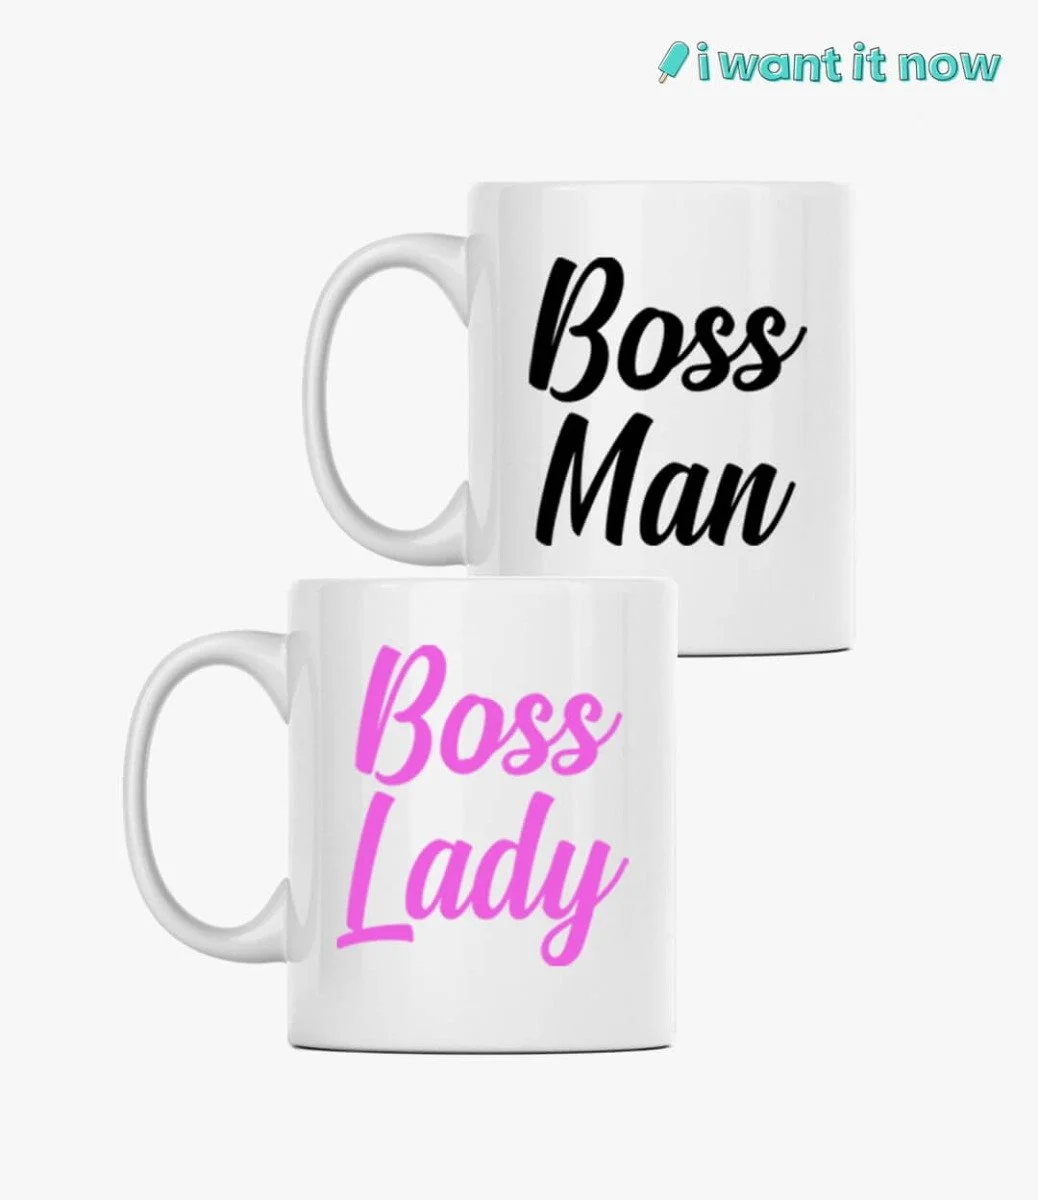 Couple Mugs - Boss Man & Boss Lady By I Want It Now